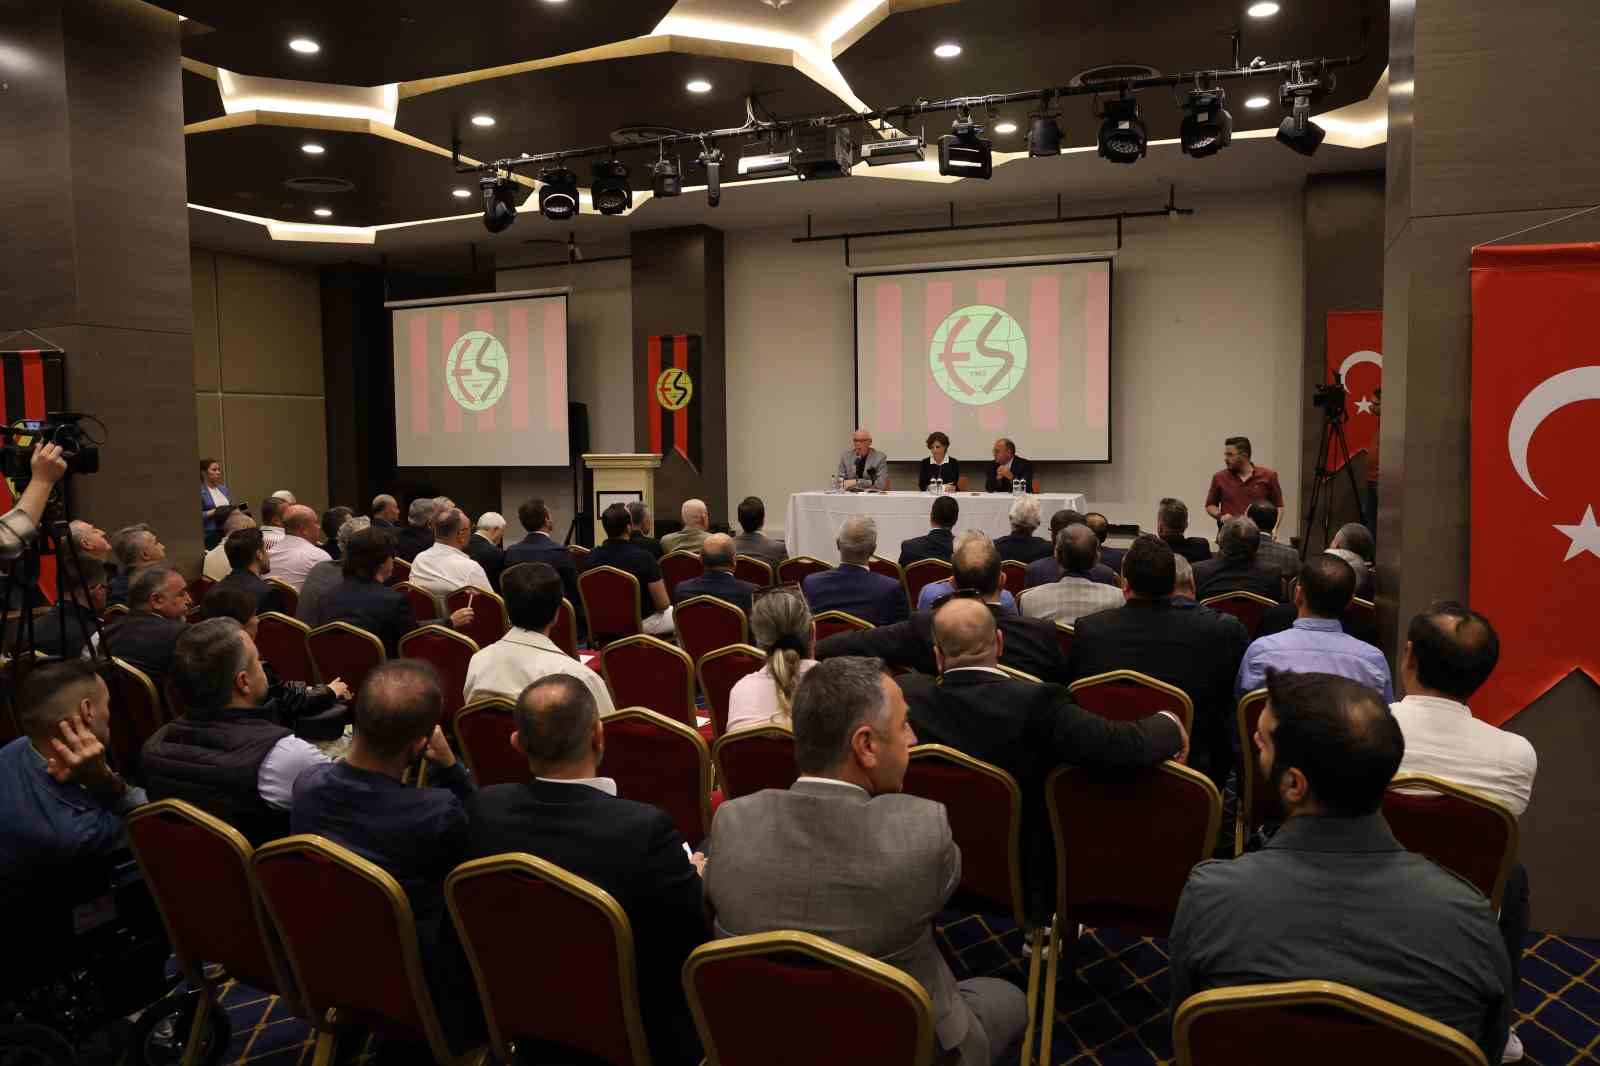 Nebi Hatipoğlu: “Eskişehirspor’un muhakkak şirketleşmesi ve kurumsallaşması lazım”